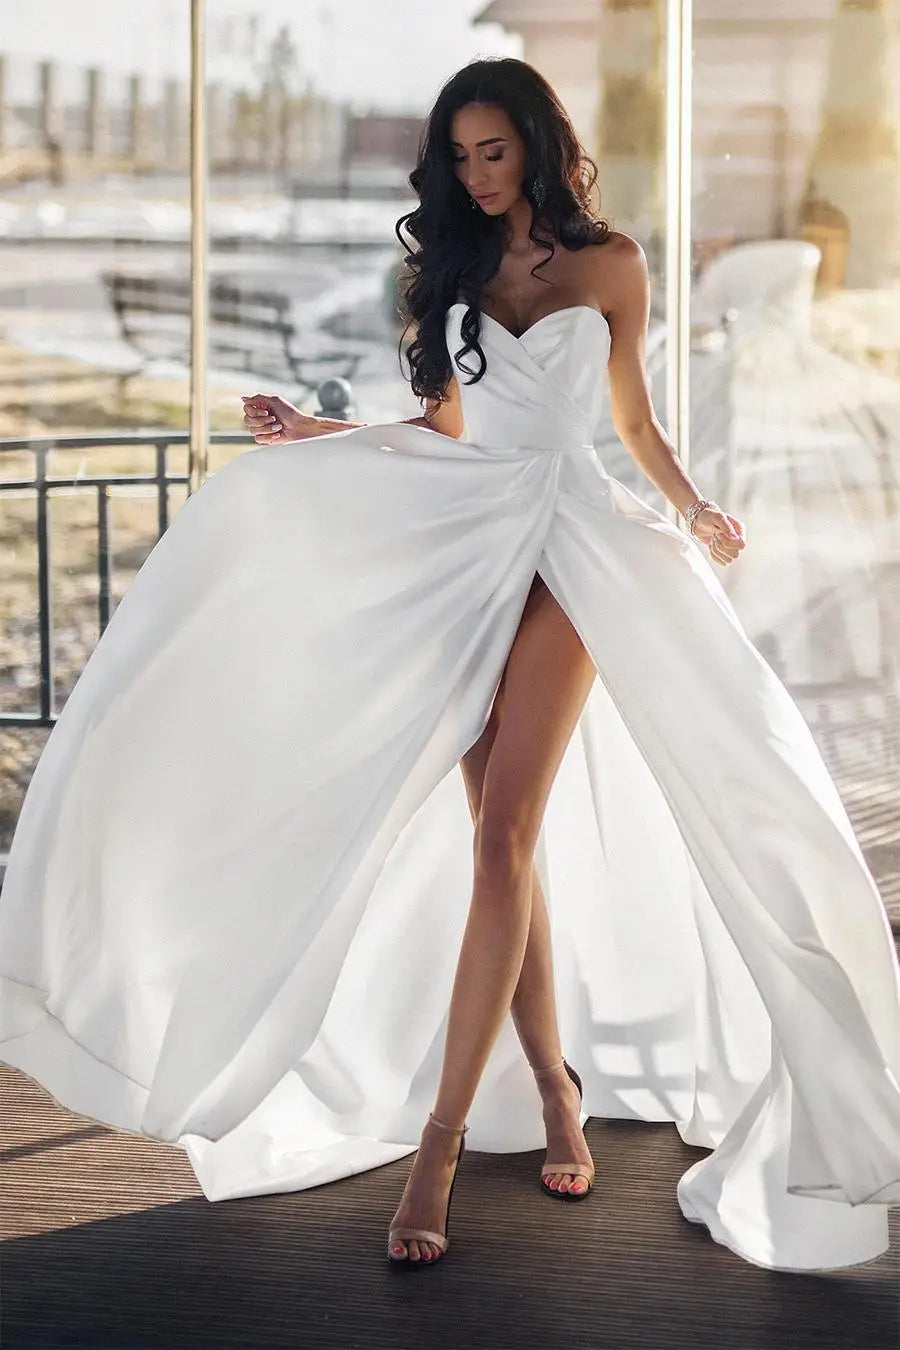 Gaun pengantin pantai biasa biasa ditambah saiz seksi kekasih lengan tanpa lengan celah gaun pengantin vestido de noiva Mariage disesuaikan